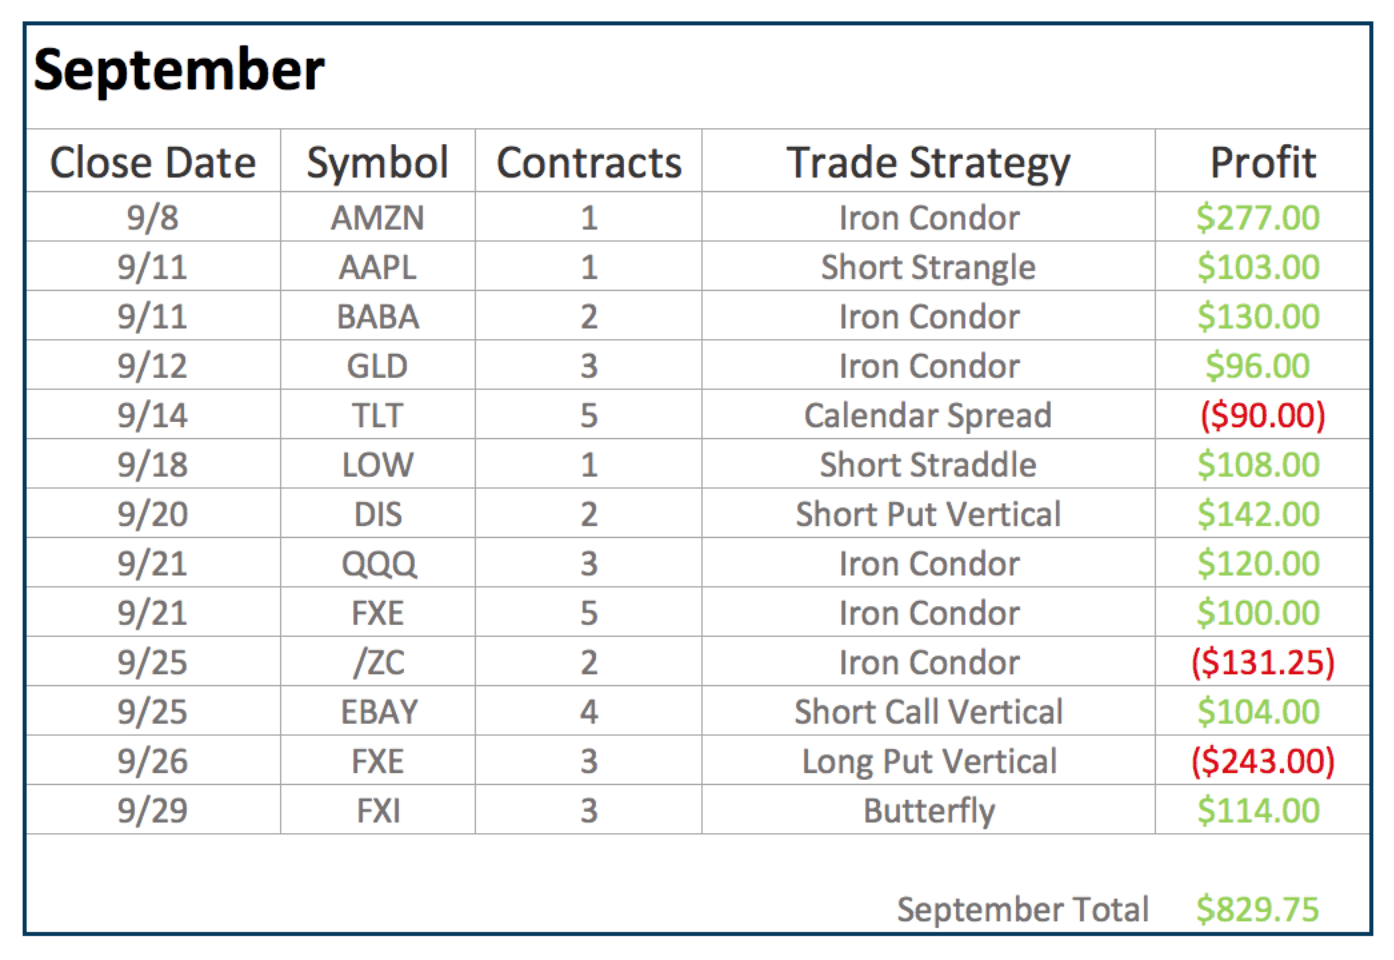 September trade results